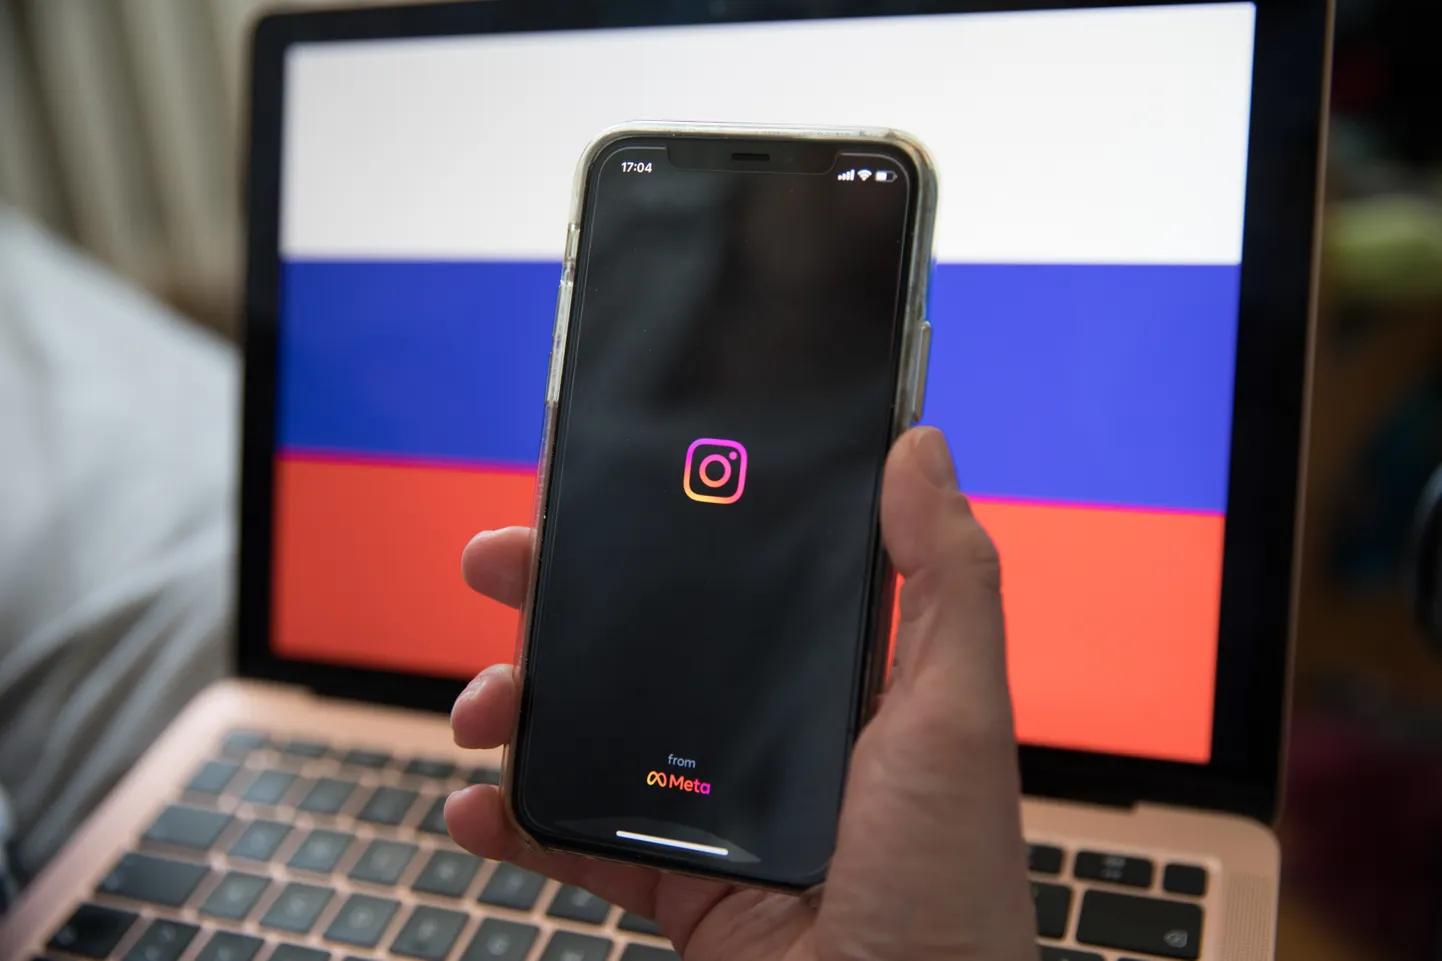 Venemaal on Instagram keelatud, kuid Vene kaitseministeerium teeb sinna ikka postitusi